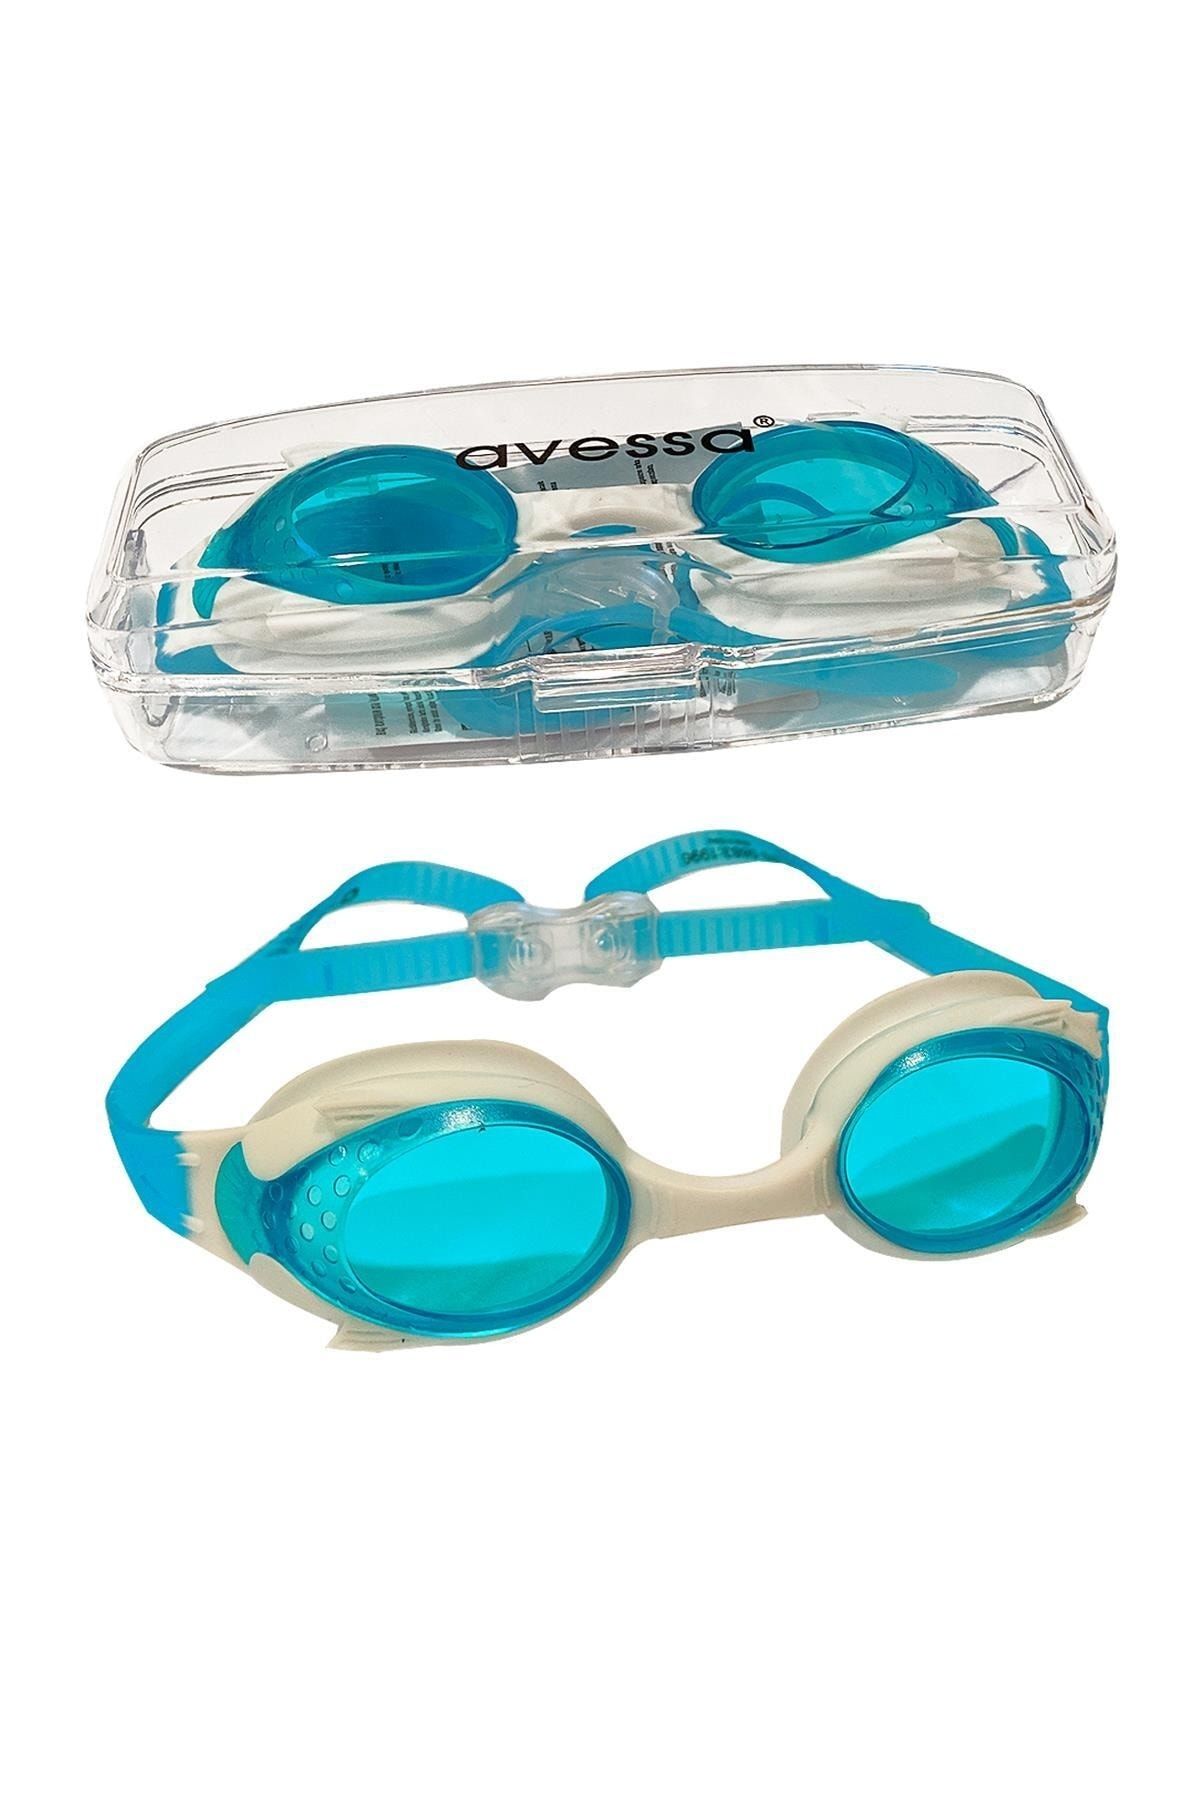 Avessa Çocuk Yüzücü Gözlüğü Mavi-beyaz Gs28-1